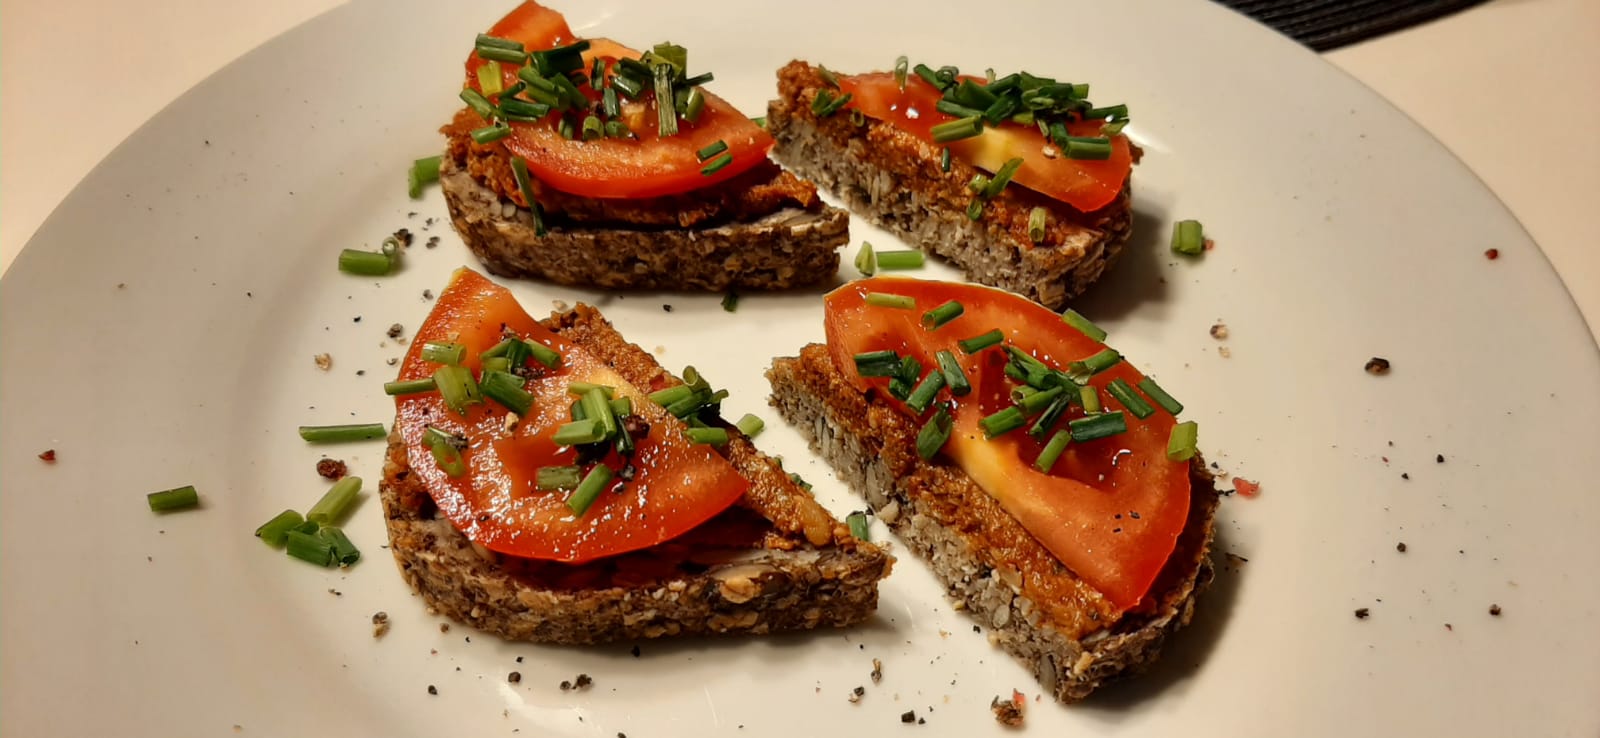 Aufstrich auf Brot mit Tomaten und Kräutern